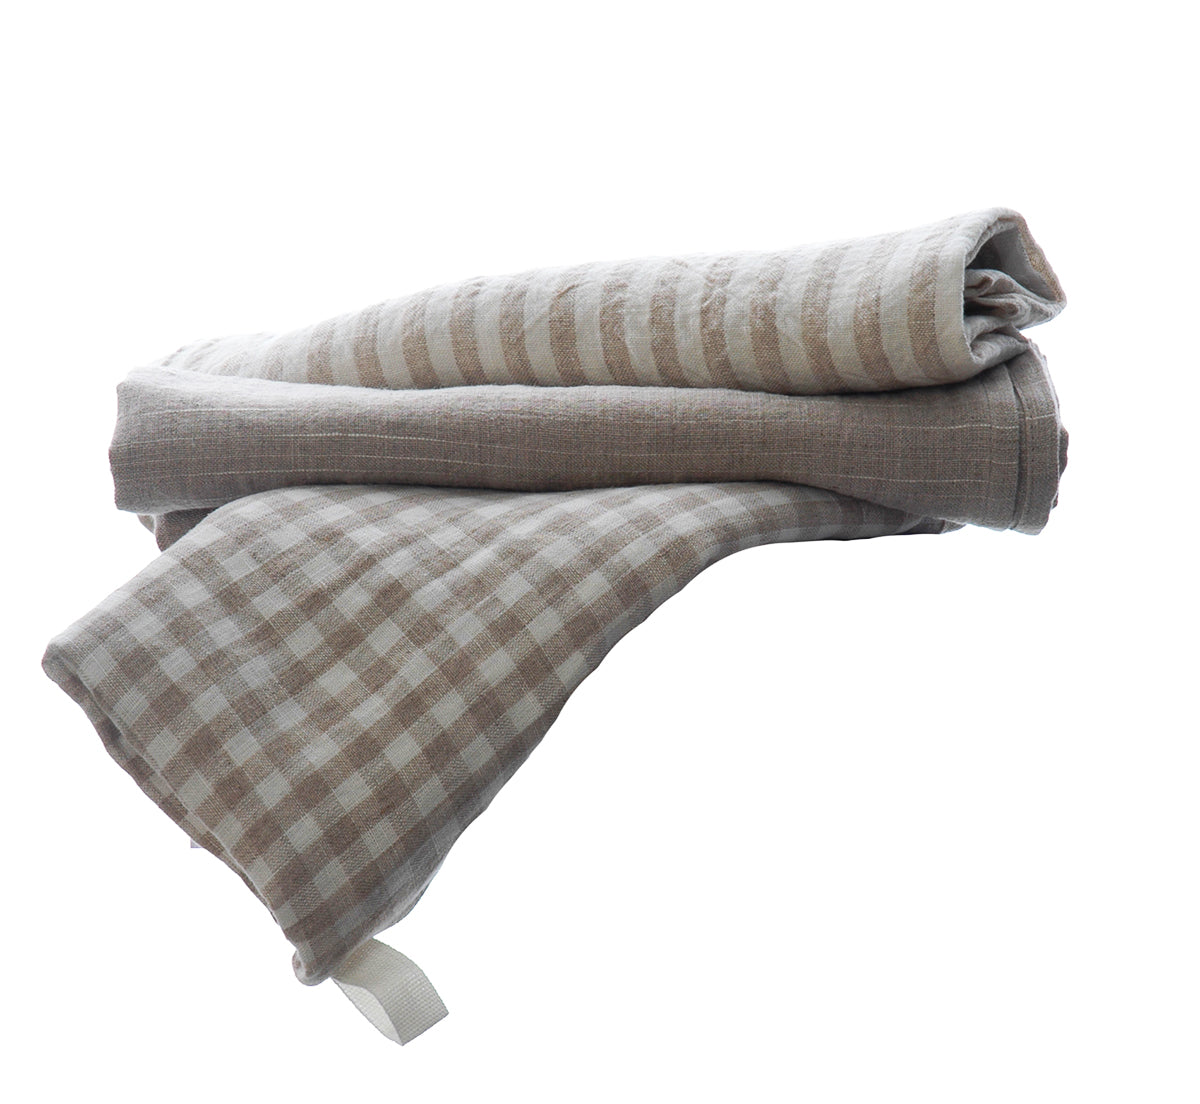 Natural pure linen tea towels